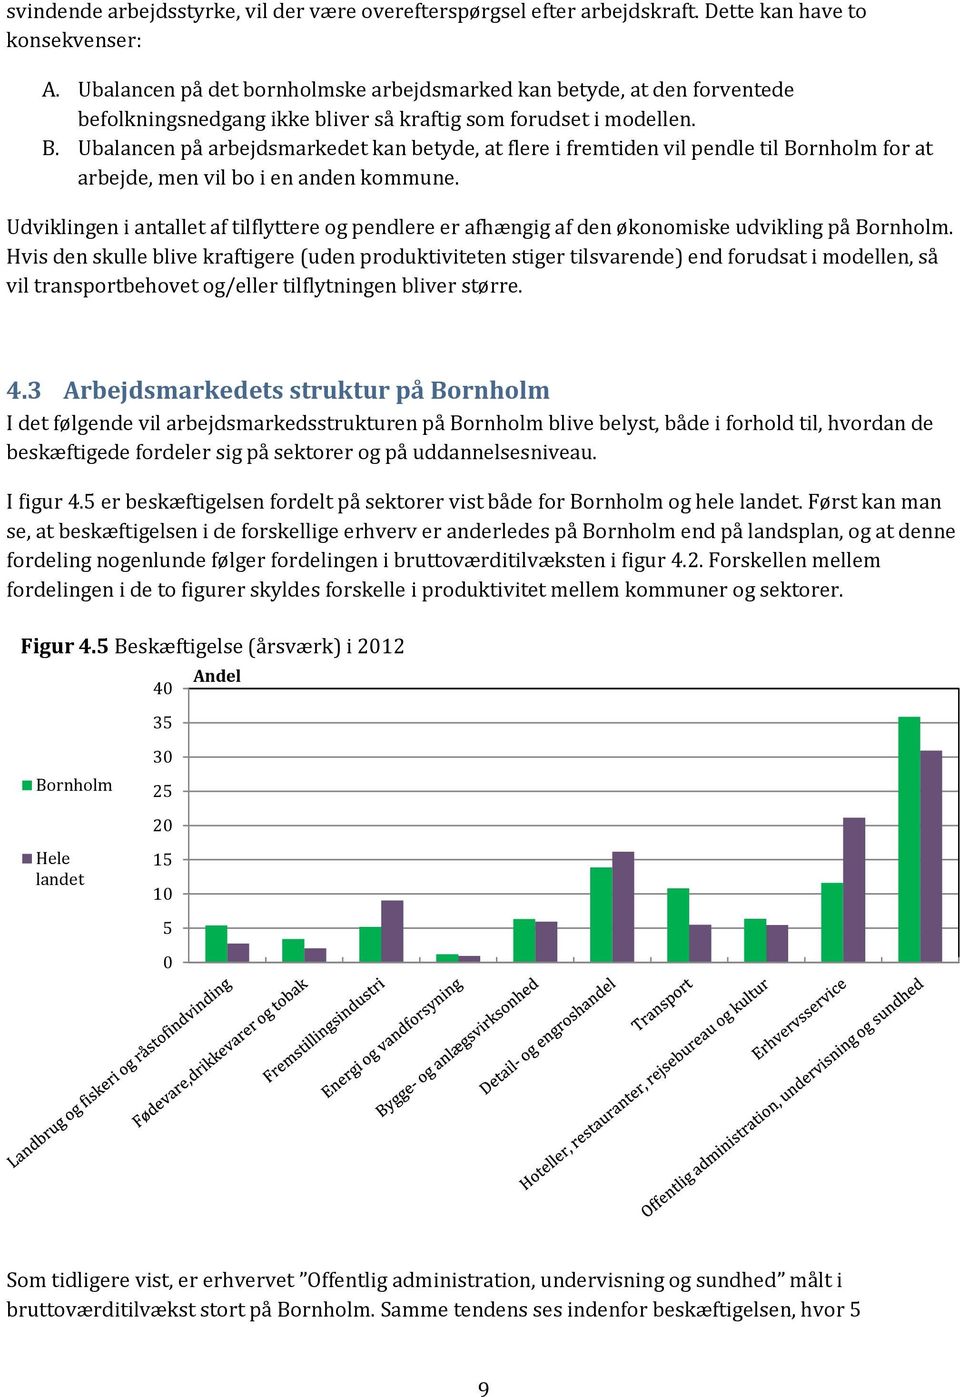 Ubalancen på arbejdsmarkedet kan betyde, at flere i fremtiden vil pendle til Bornholm for at arbejde, men vil bo i en anden kommune.